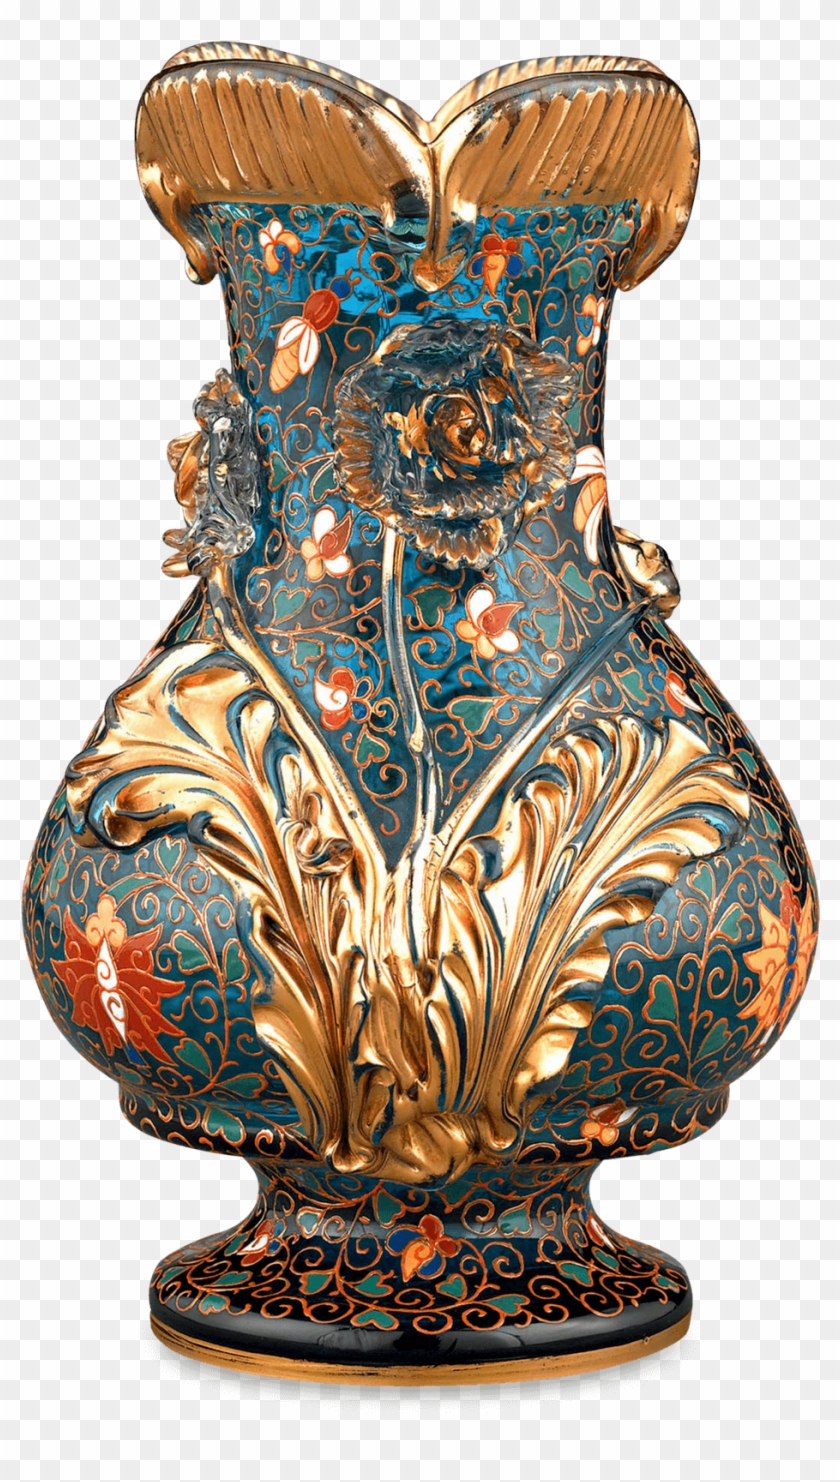 File - Vase - Vase Arabian Png, Transparent Png - 1750x1750(#663423